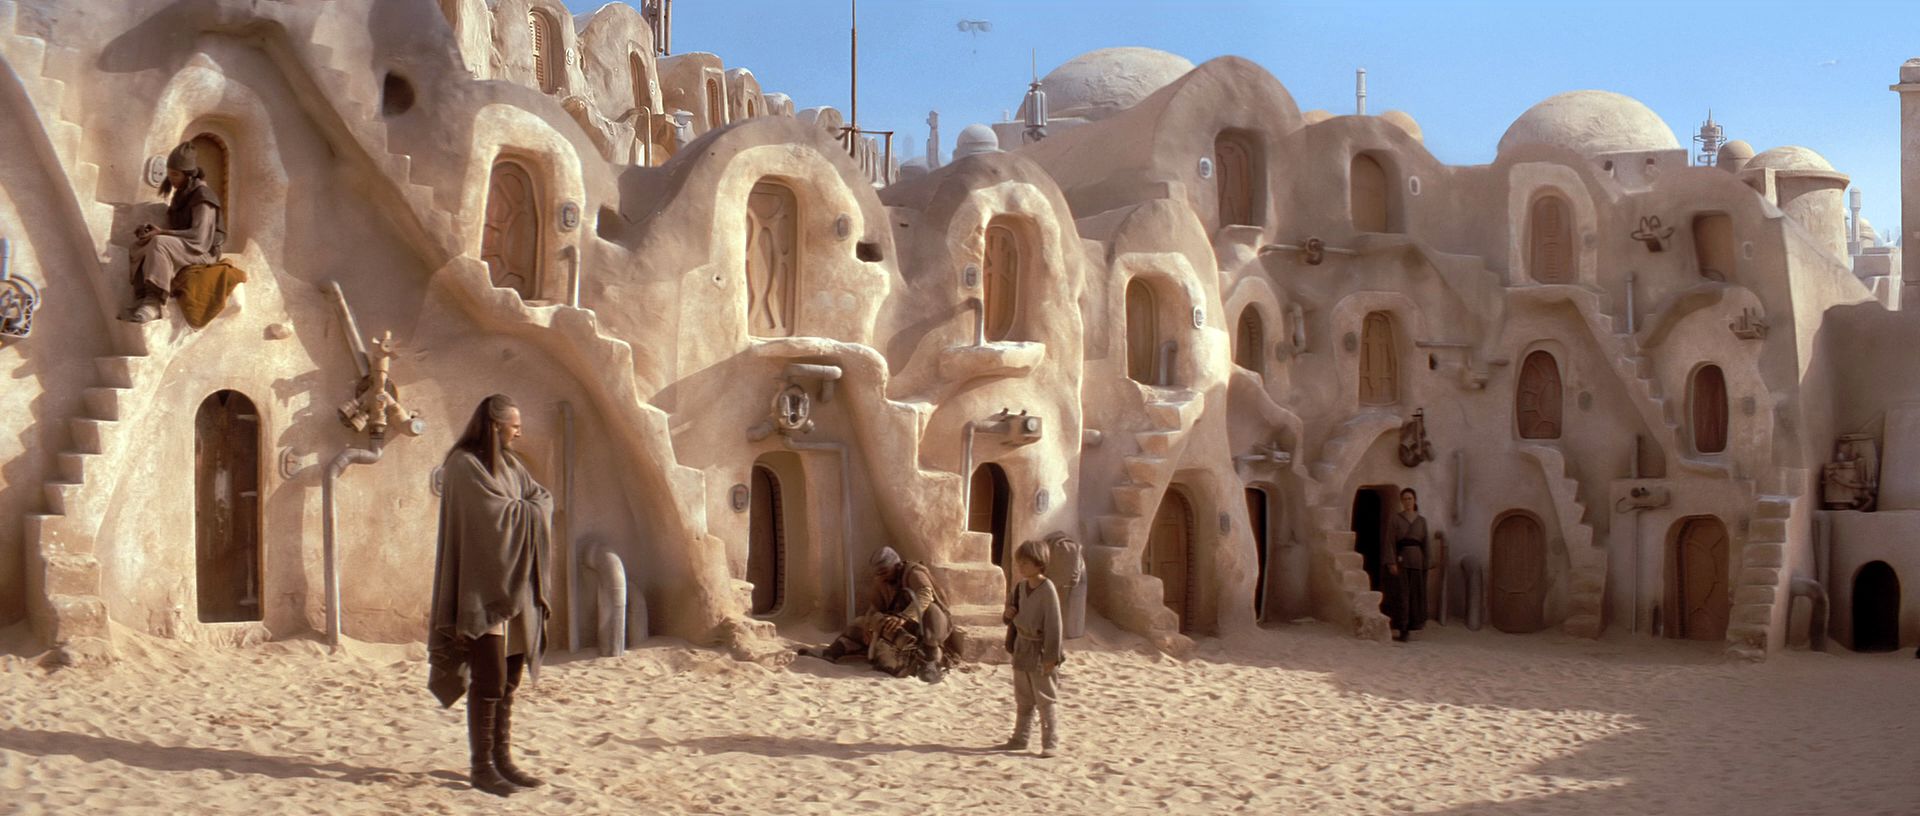 Descargar fondos de escritorio de Tatooine (La Guerra De Las Galaxias) HD